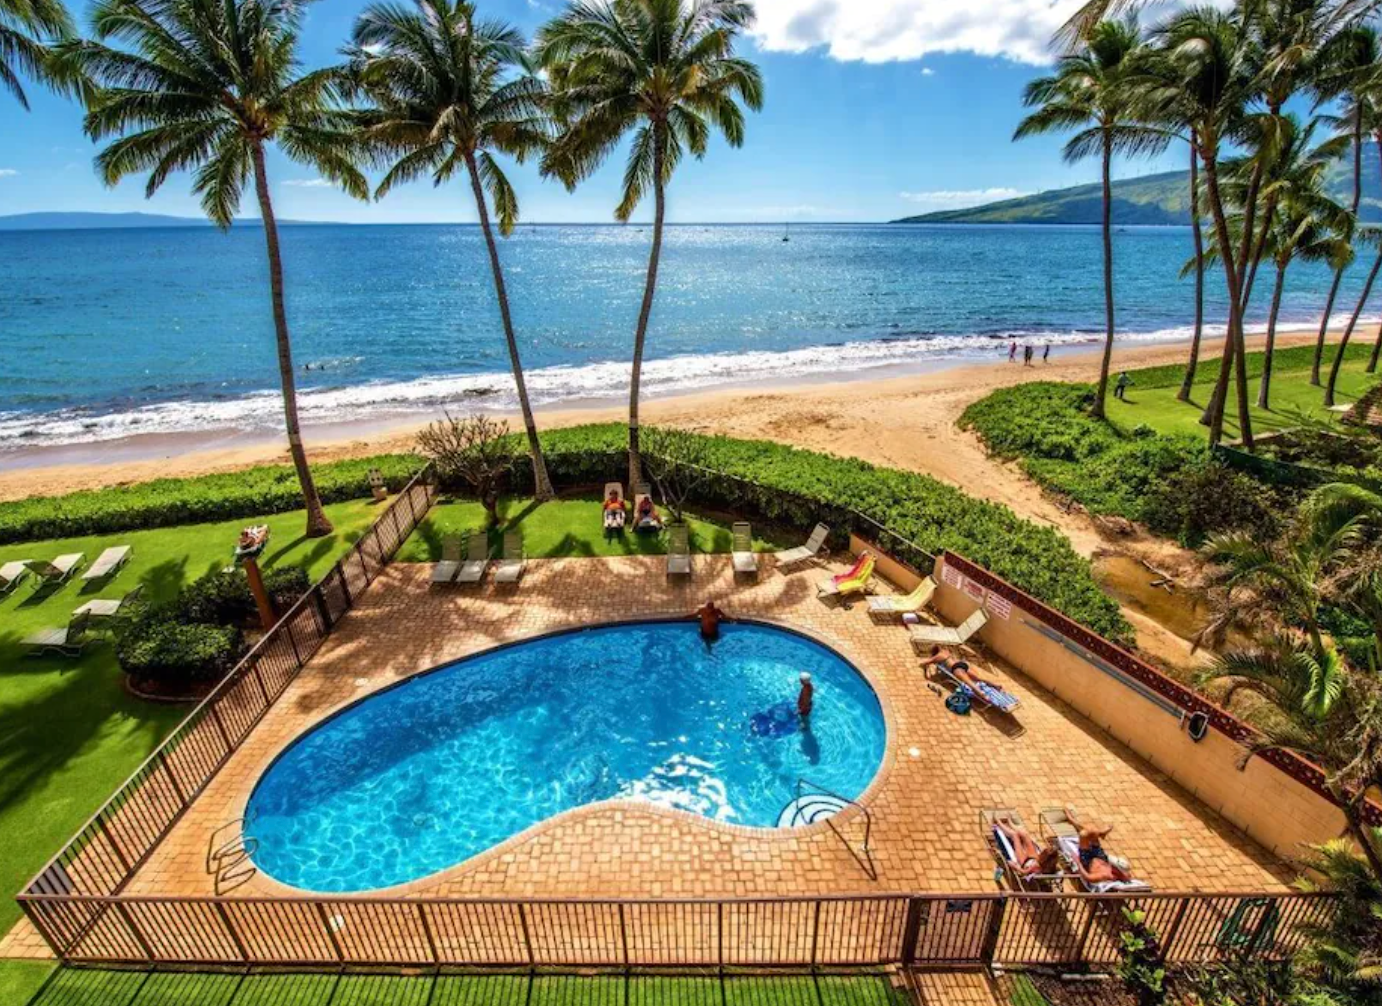 hawaii luxury vacation